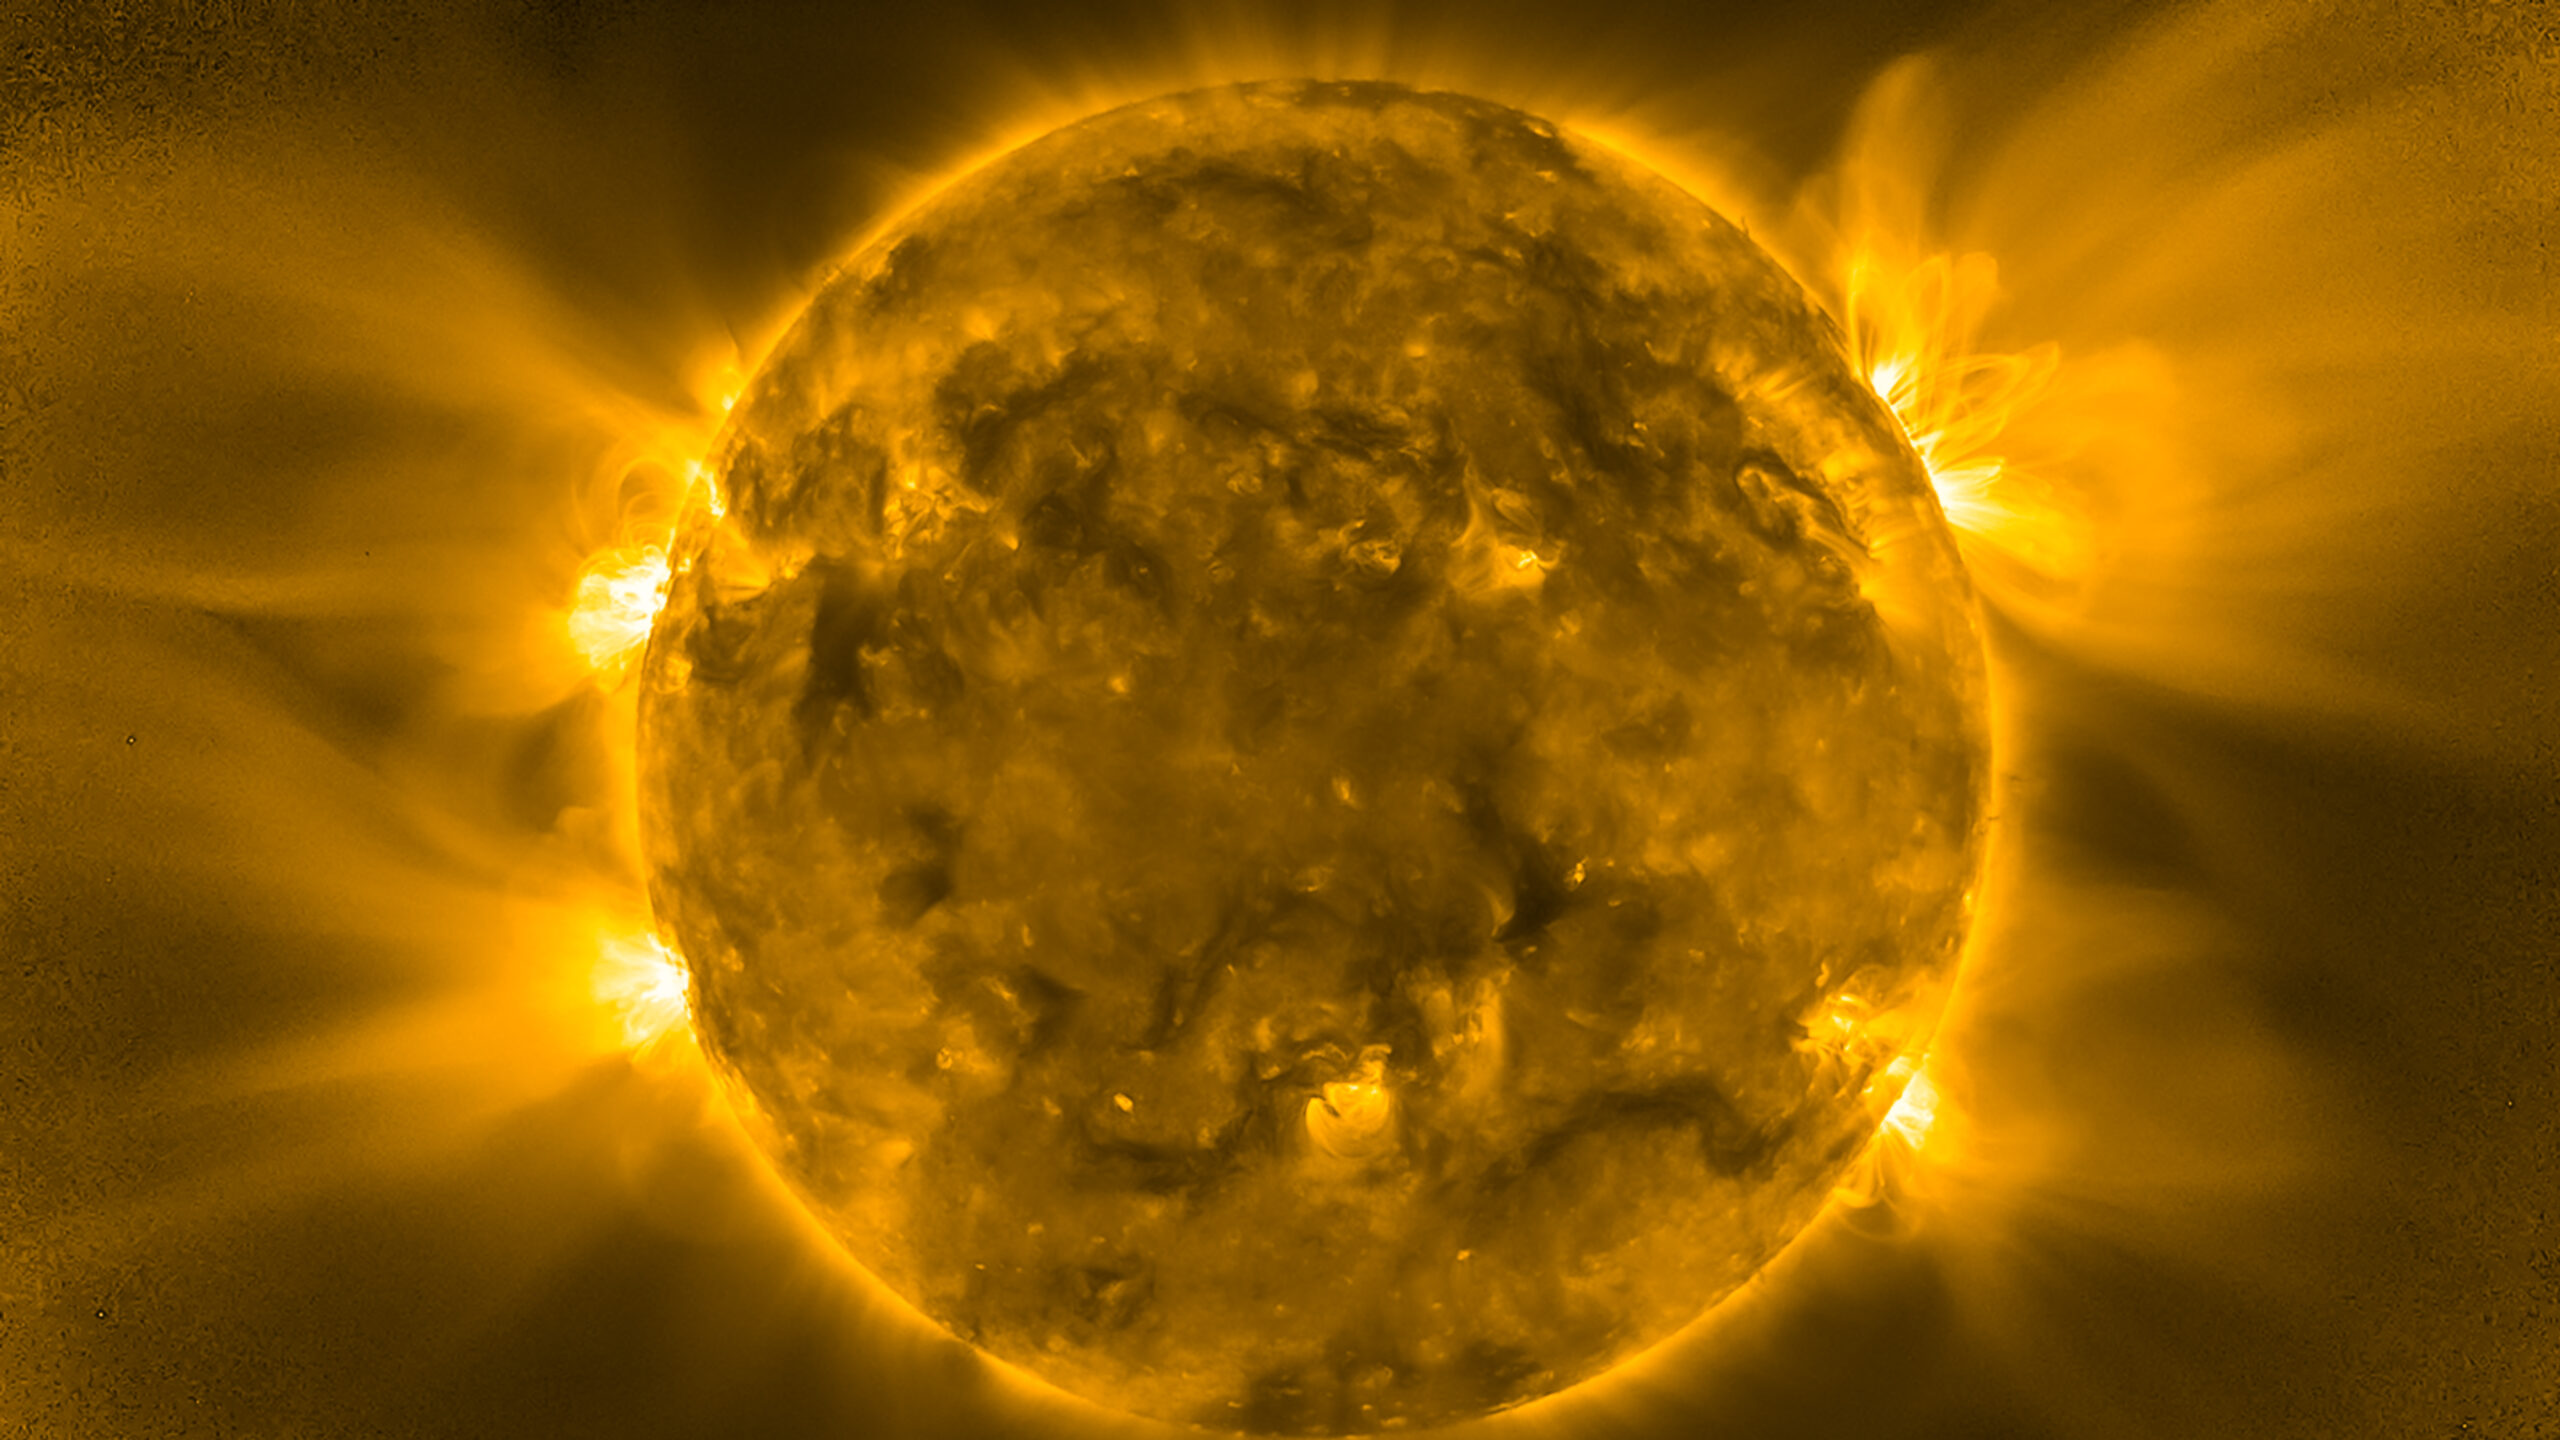 Cómo se quema el Sol si no hay oxígeno en el espacio exterior